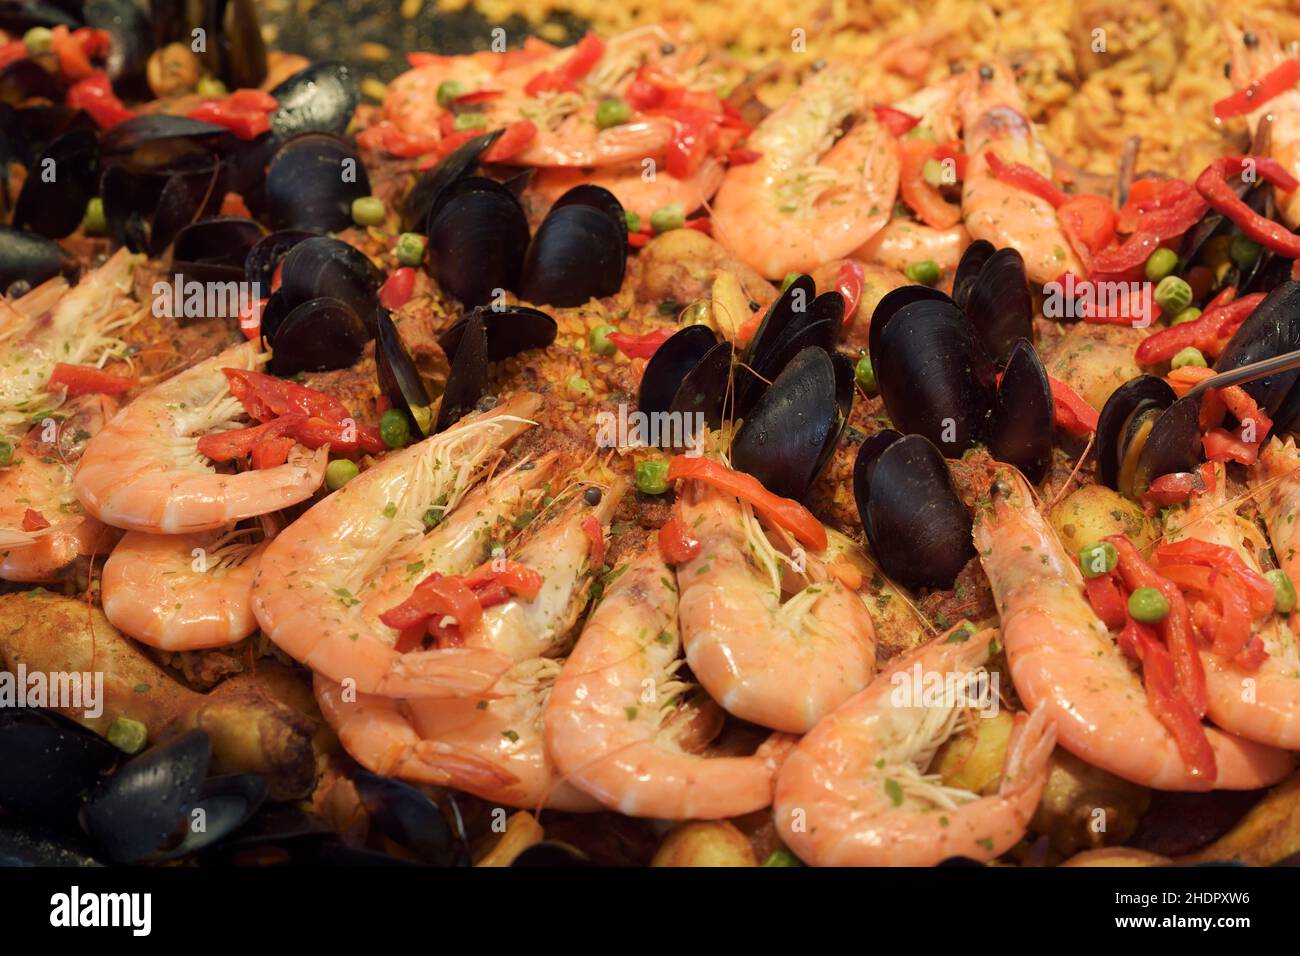 Plat de paella aux fruits de mer avec crevettes en gros plan, cuisine espagnole traditionnelle, sur le marché de la rue dans le sud de la France Banque D'Images